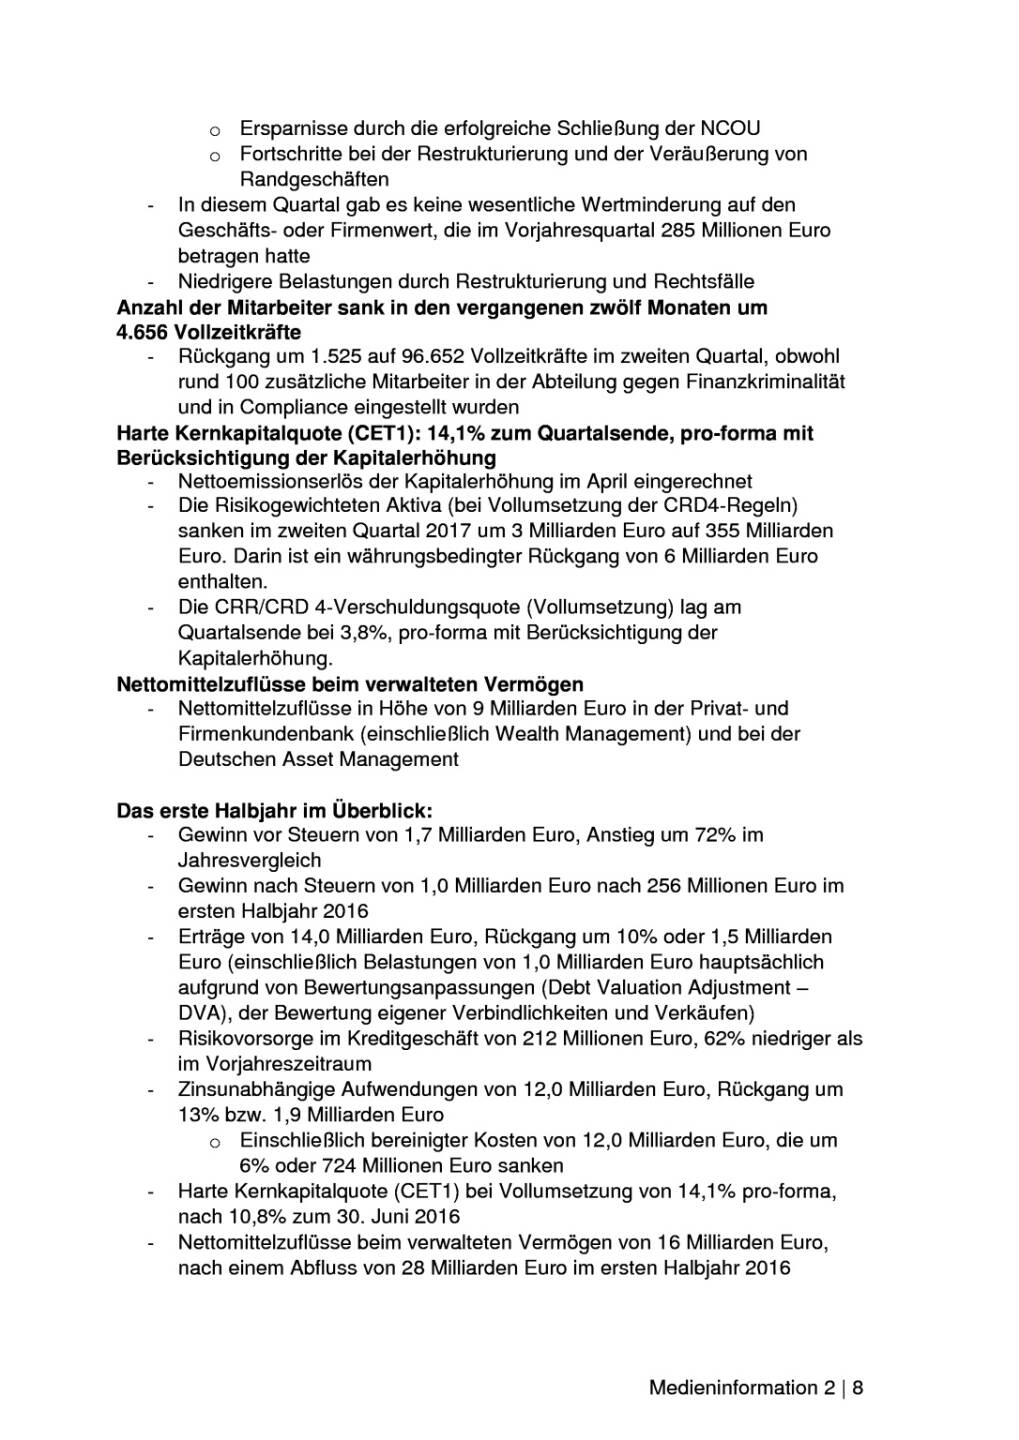 Deutsche Bank: Q2 bringt 466 Mio. Euro Gewinn nach Steuern, Seite 2/8, komplettes Dokument unter http://boerse-social.com/static/uploads/file_2297_deutsche_bank_q2_bringt_466_mio_euro_gewinn_nach_steuern.pdf